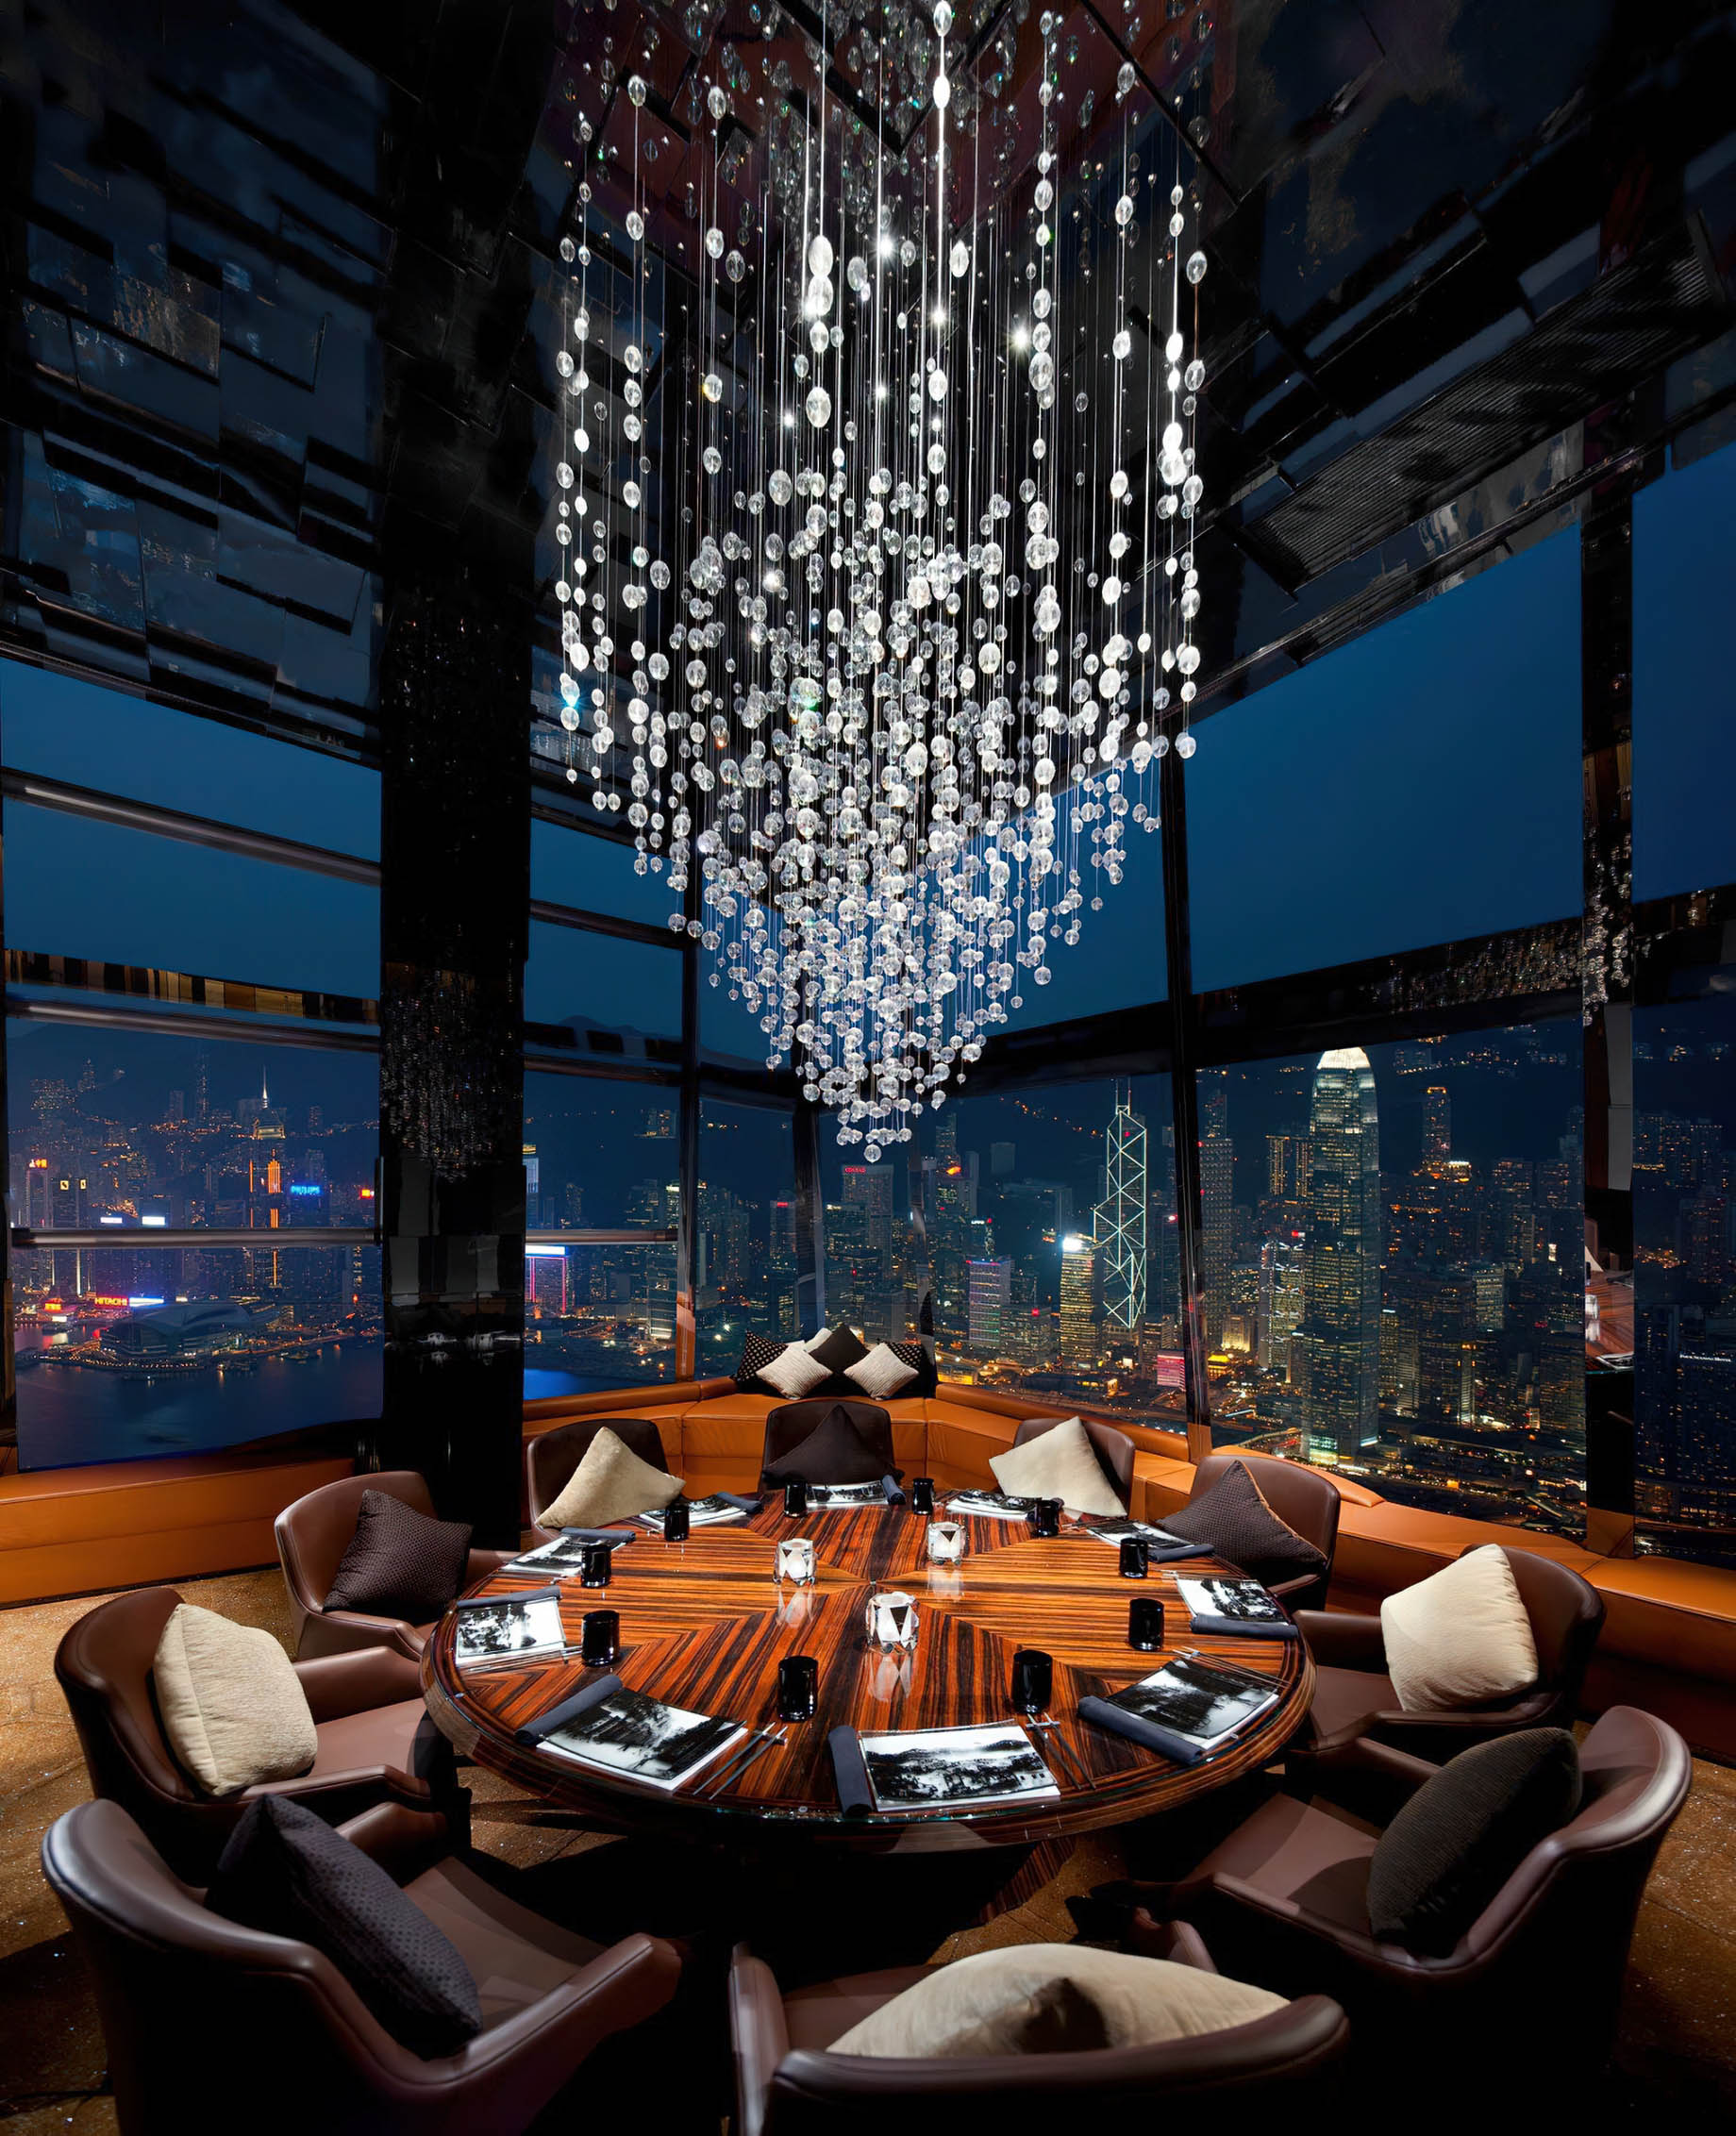 The Ritz-Carlton, Hong Kong Hotel – West Kowloon, Hong Kong – Ozone Bar Table